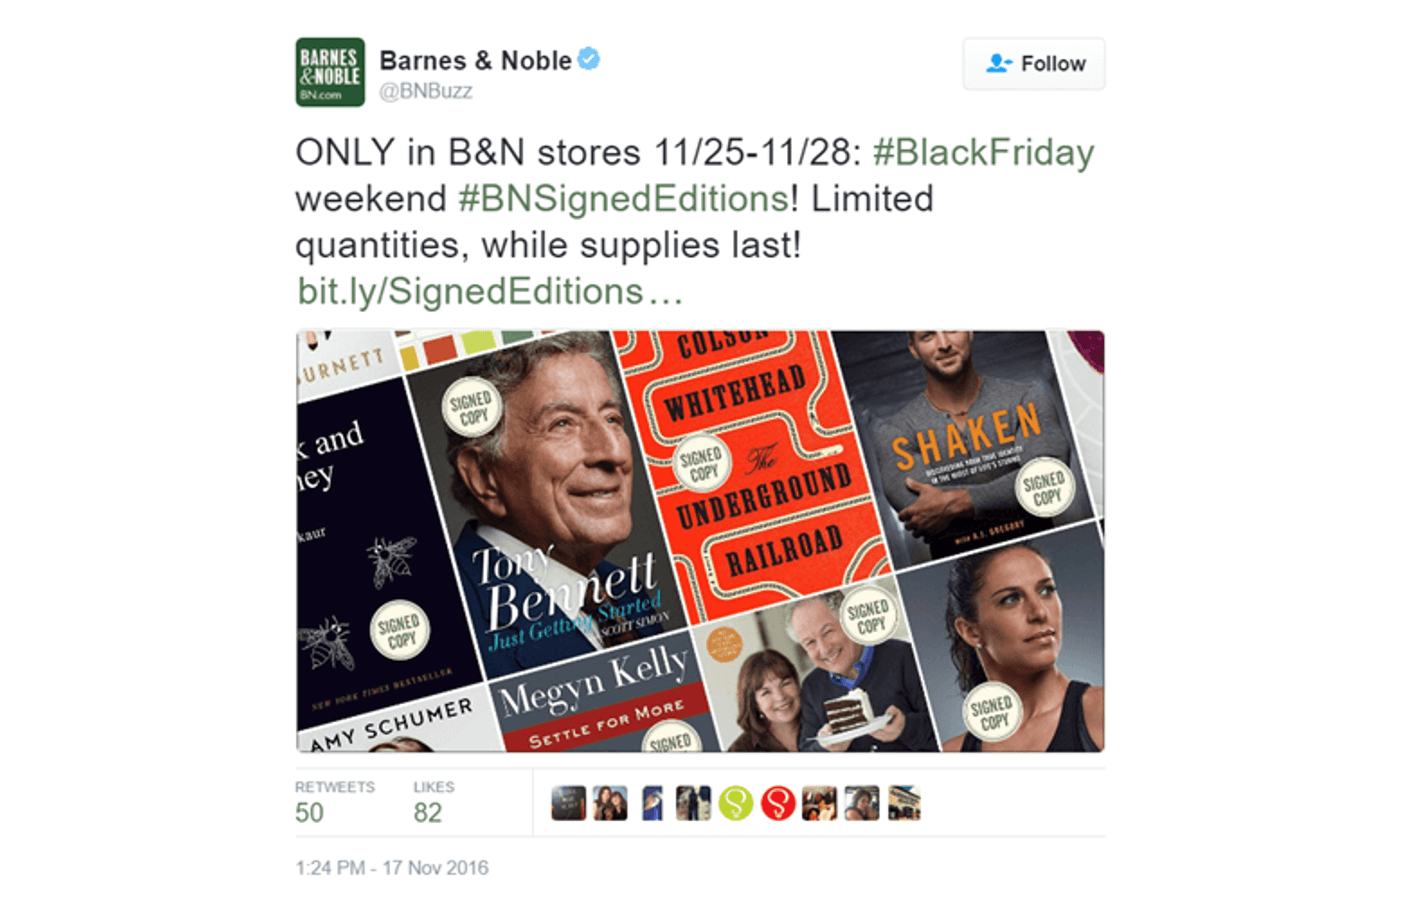 Barnes & Noble’s Black Friday post on Twitter